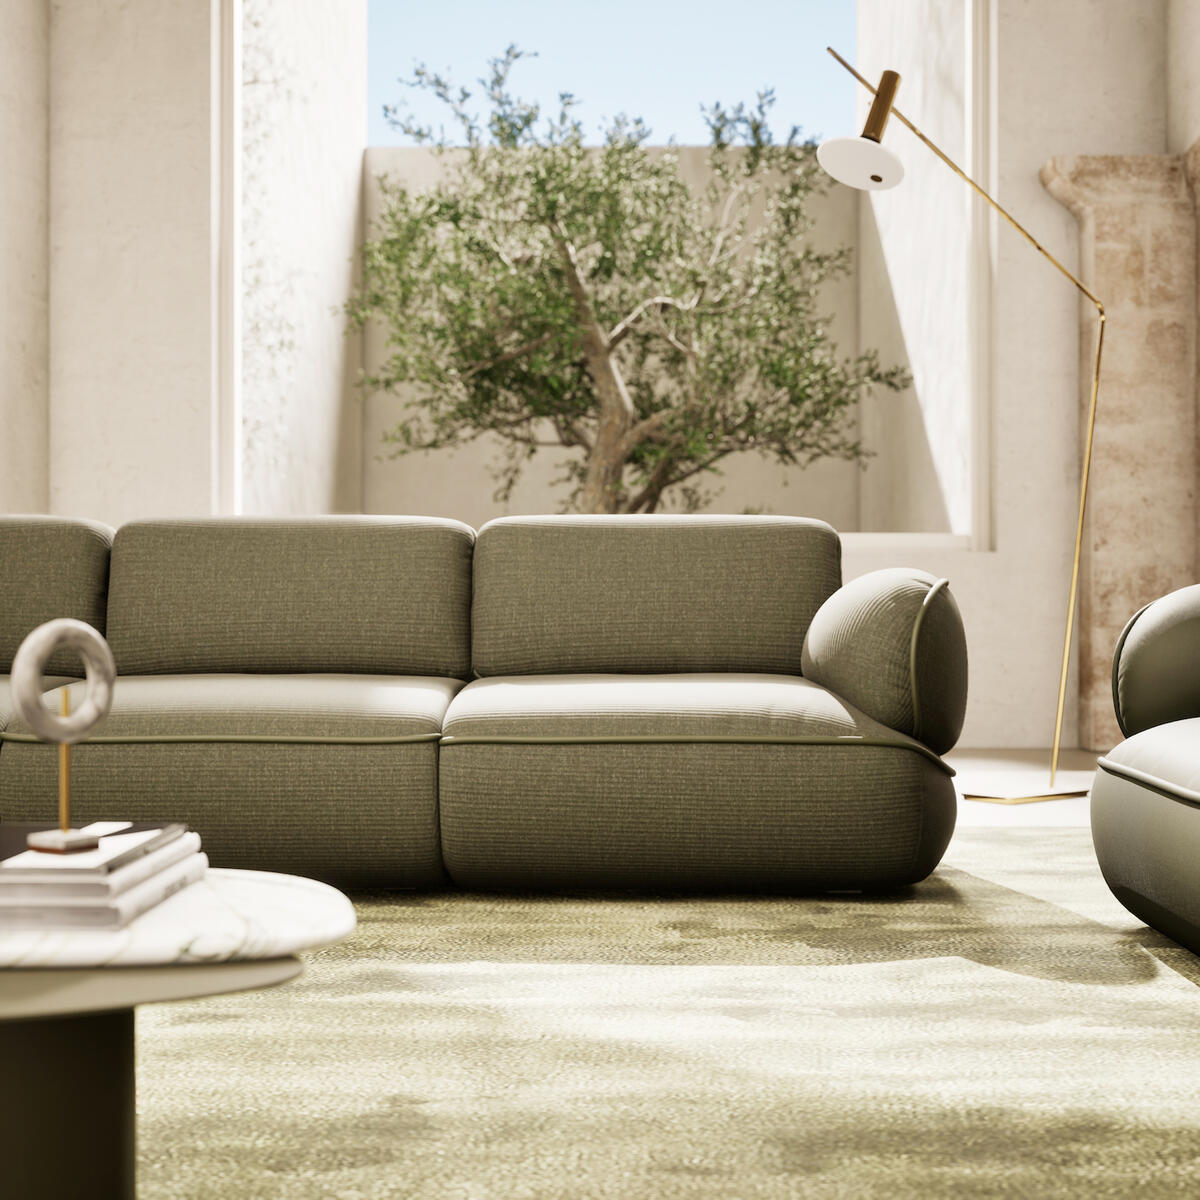 The Snail sofa by Natuzzi Italia